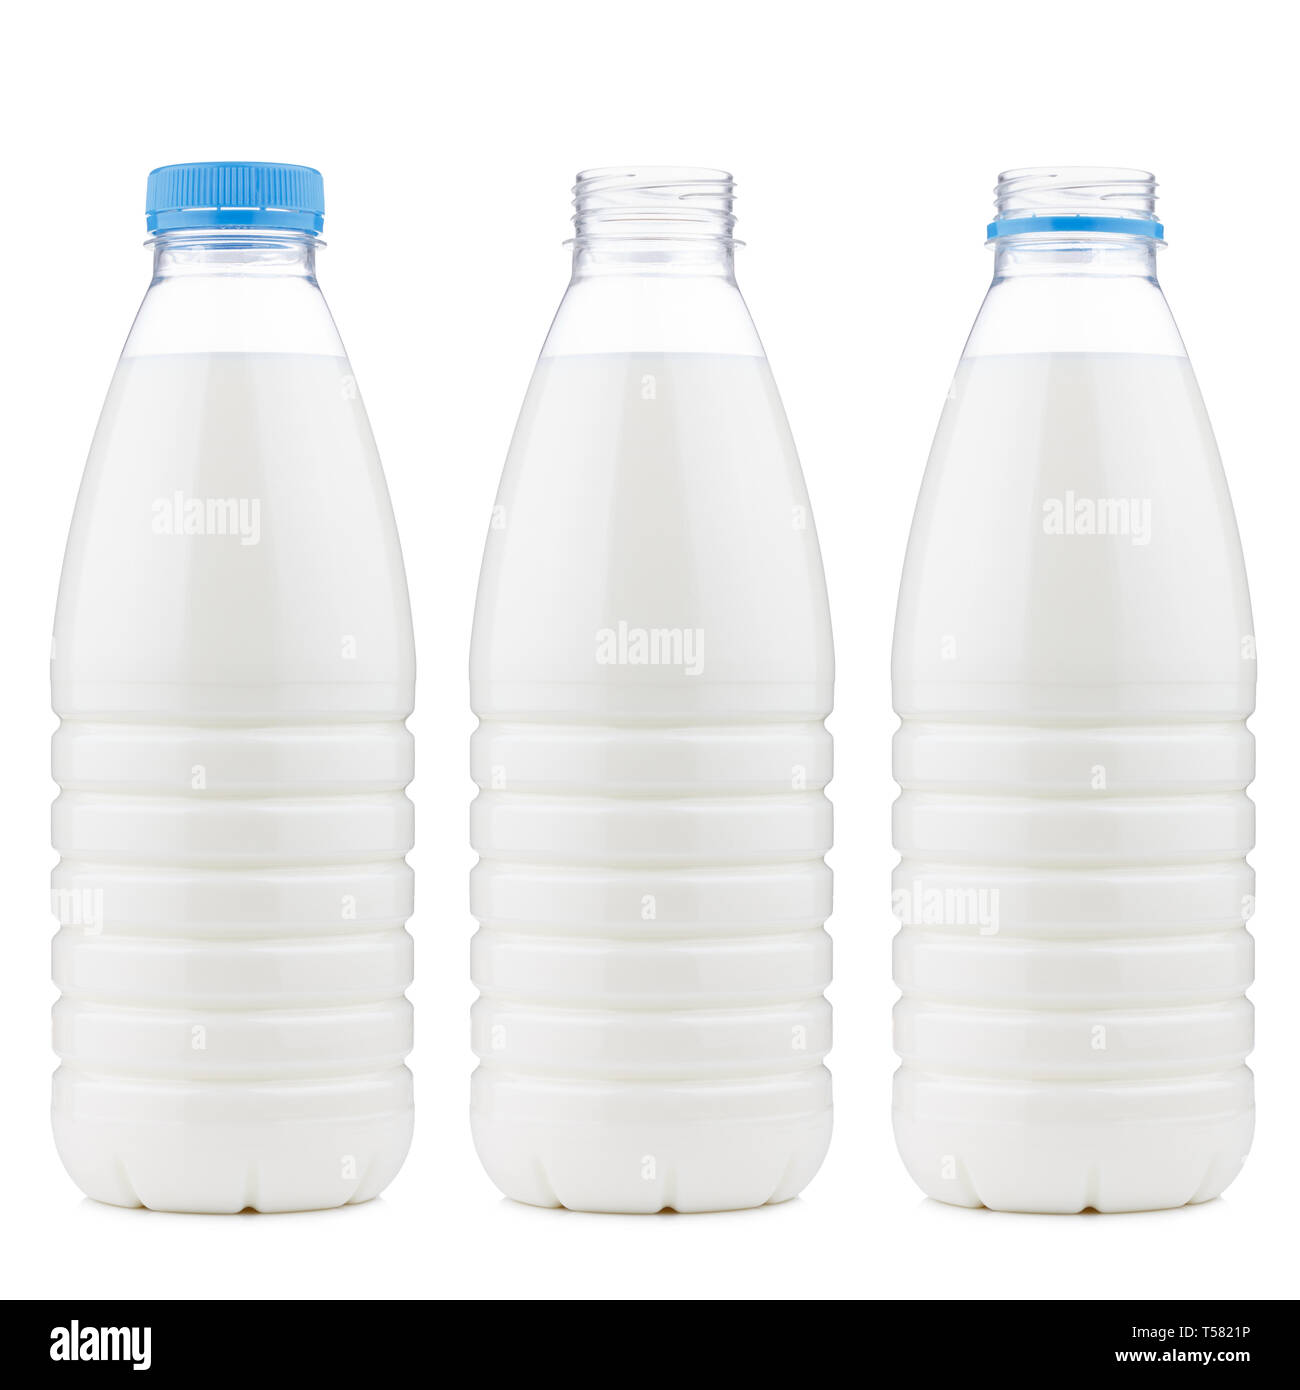 Bouteille plastique 1 litre de lait ouvert et fermé, isolé sur